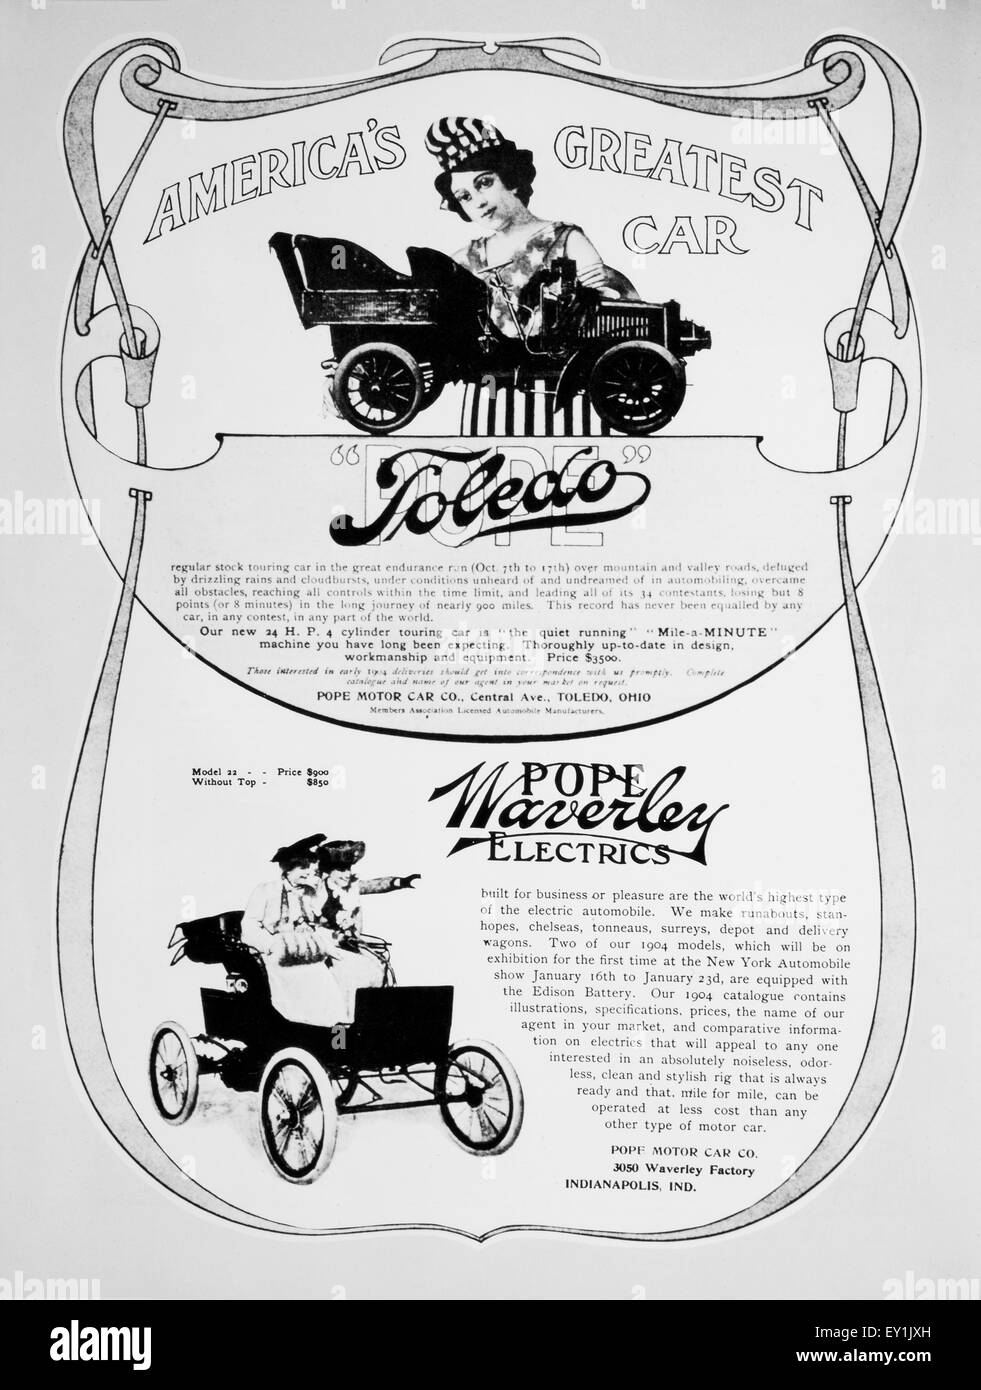 Le pape Motor Car Company, Publicité pour Tolède et Waverley automobiles électriques, 1904 Banque D'Images